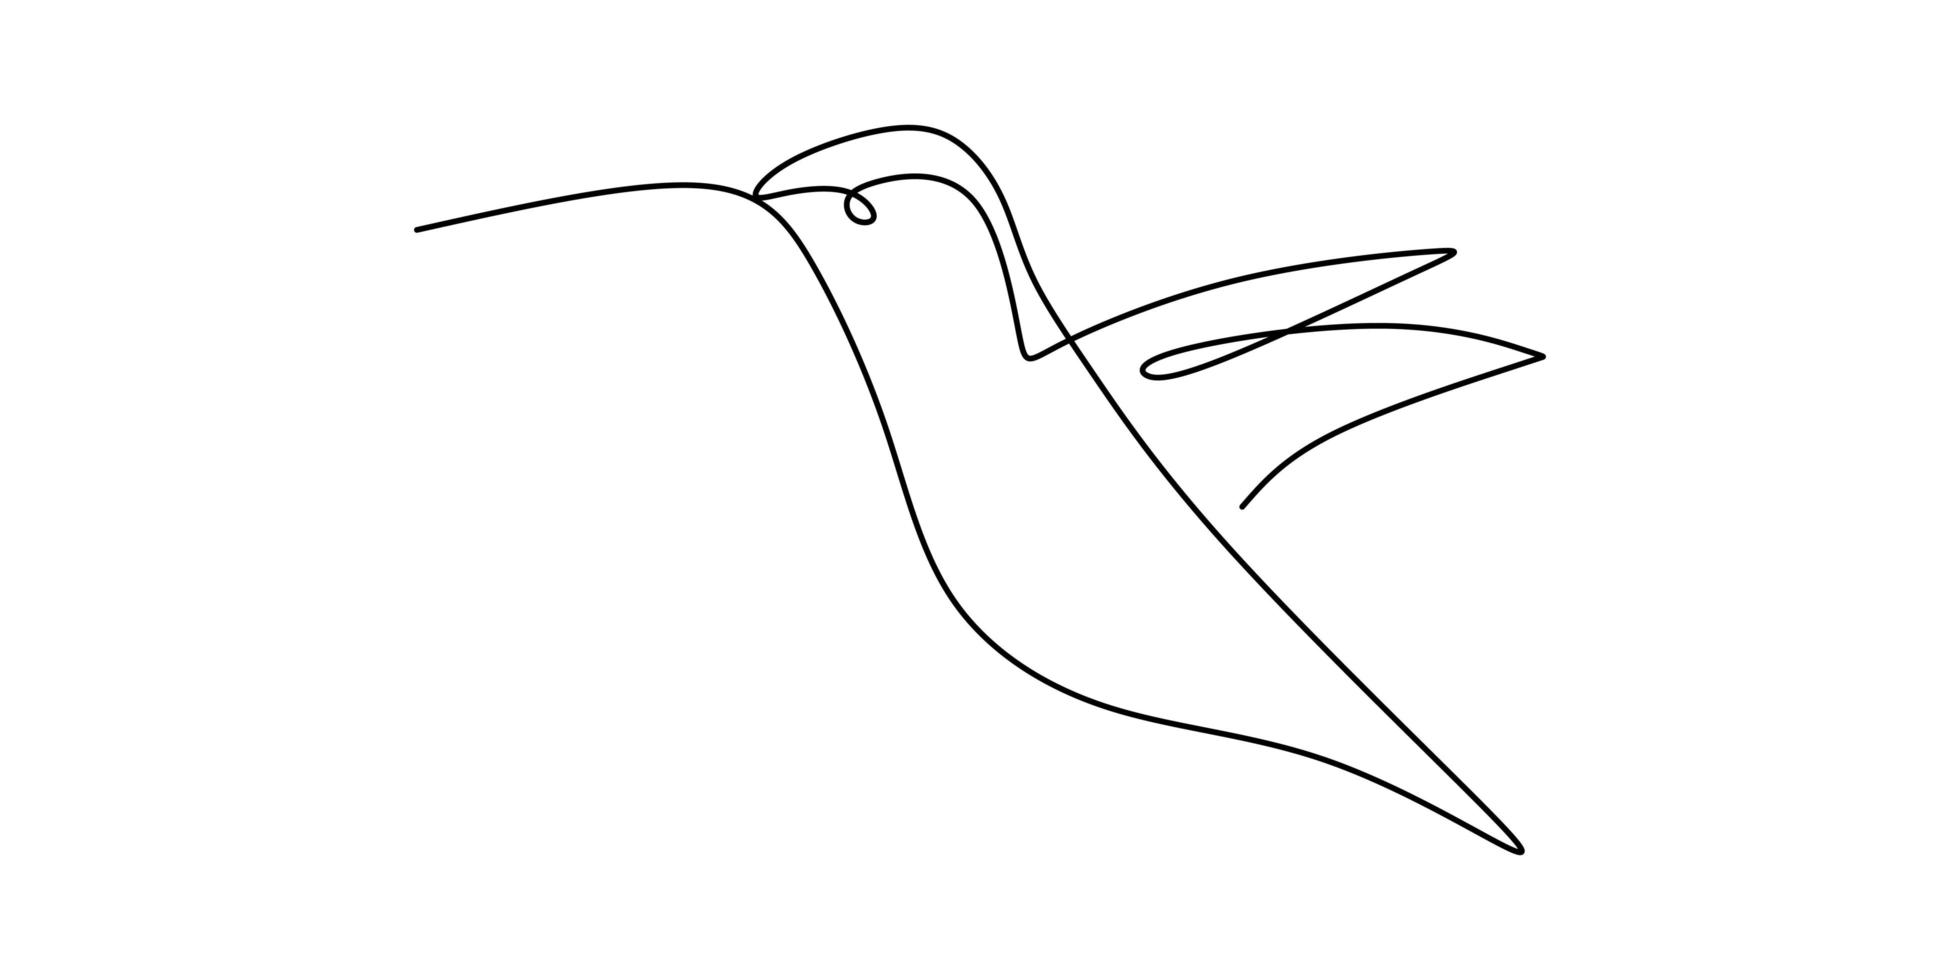 um desenho de linha contínua de um lindo colibri. mão desenhada linha arte pássaro tropical. vetor